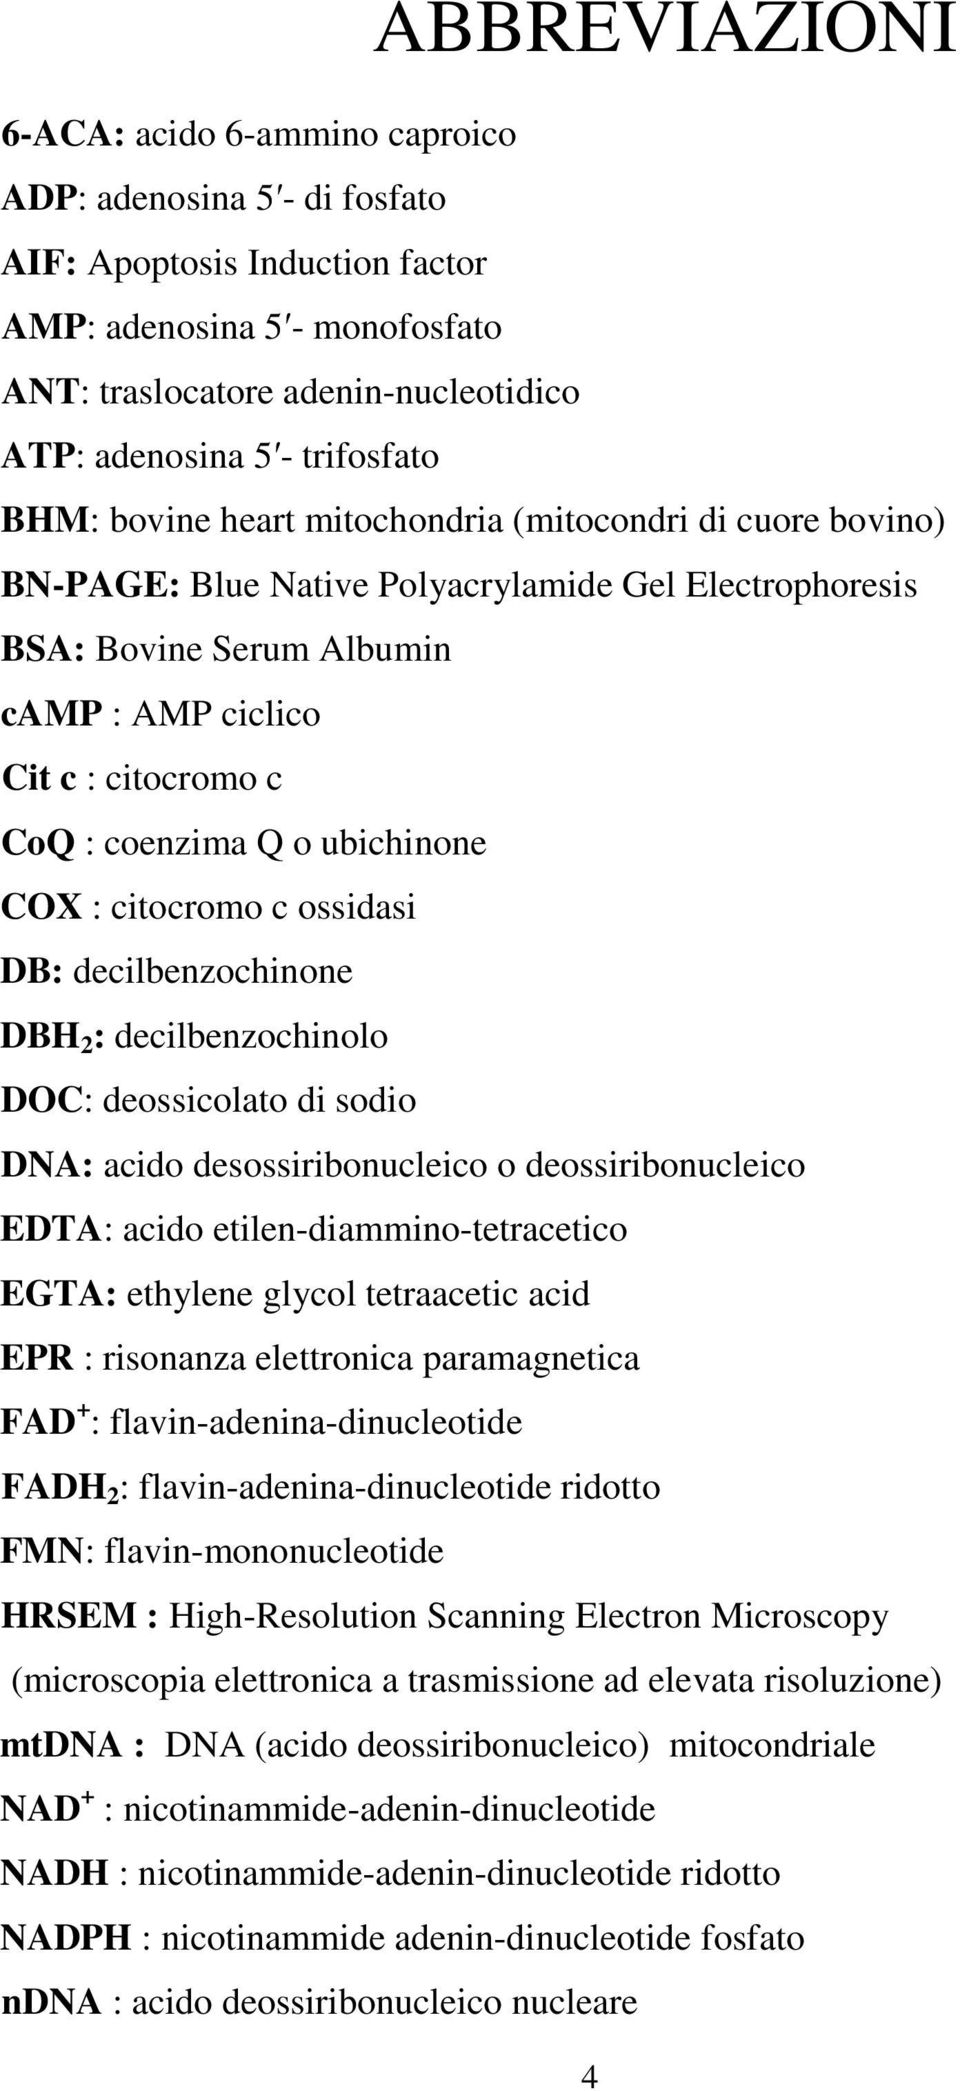 coenzima o ubichinone COX : citocromo c ossidasi DB: decilbenzochinone DBH 2 : decilbenzochinolo DOC: deossicolato di sodio DNA: acido desossiribonucleico o deossiribonucleico EDTA: acido